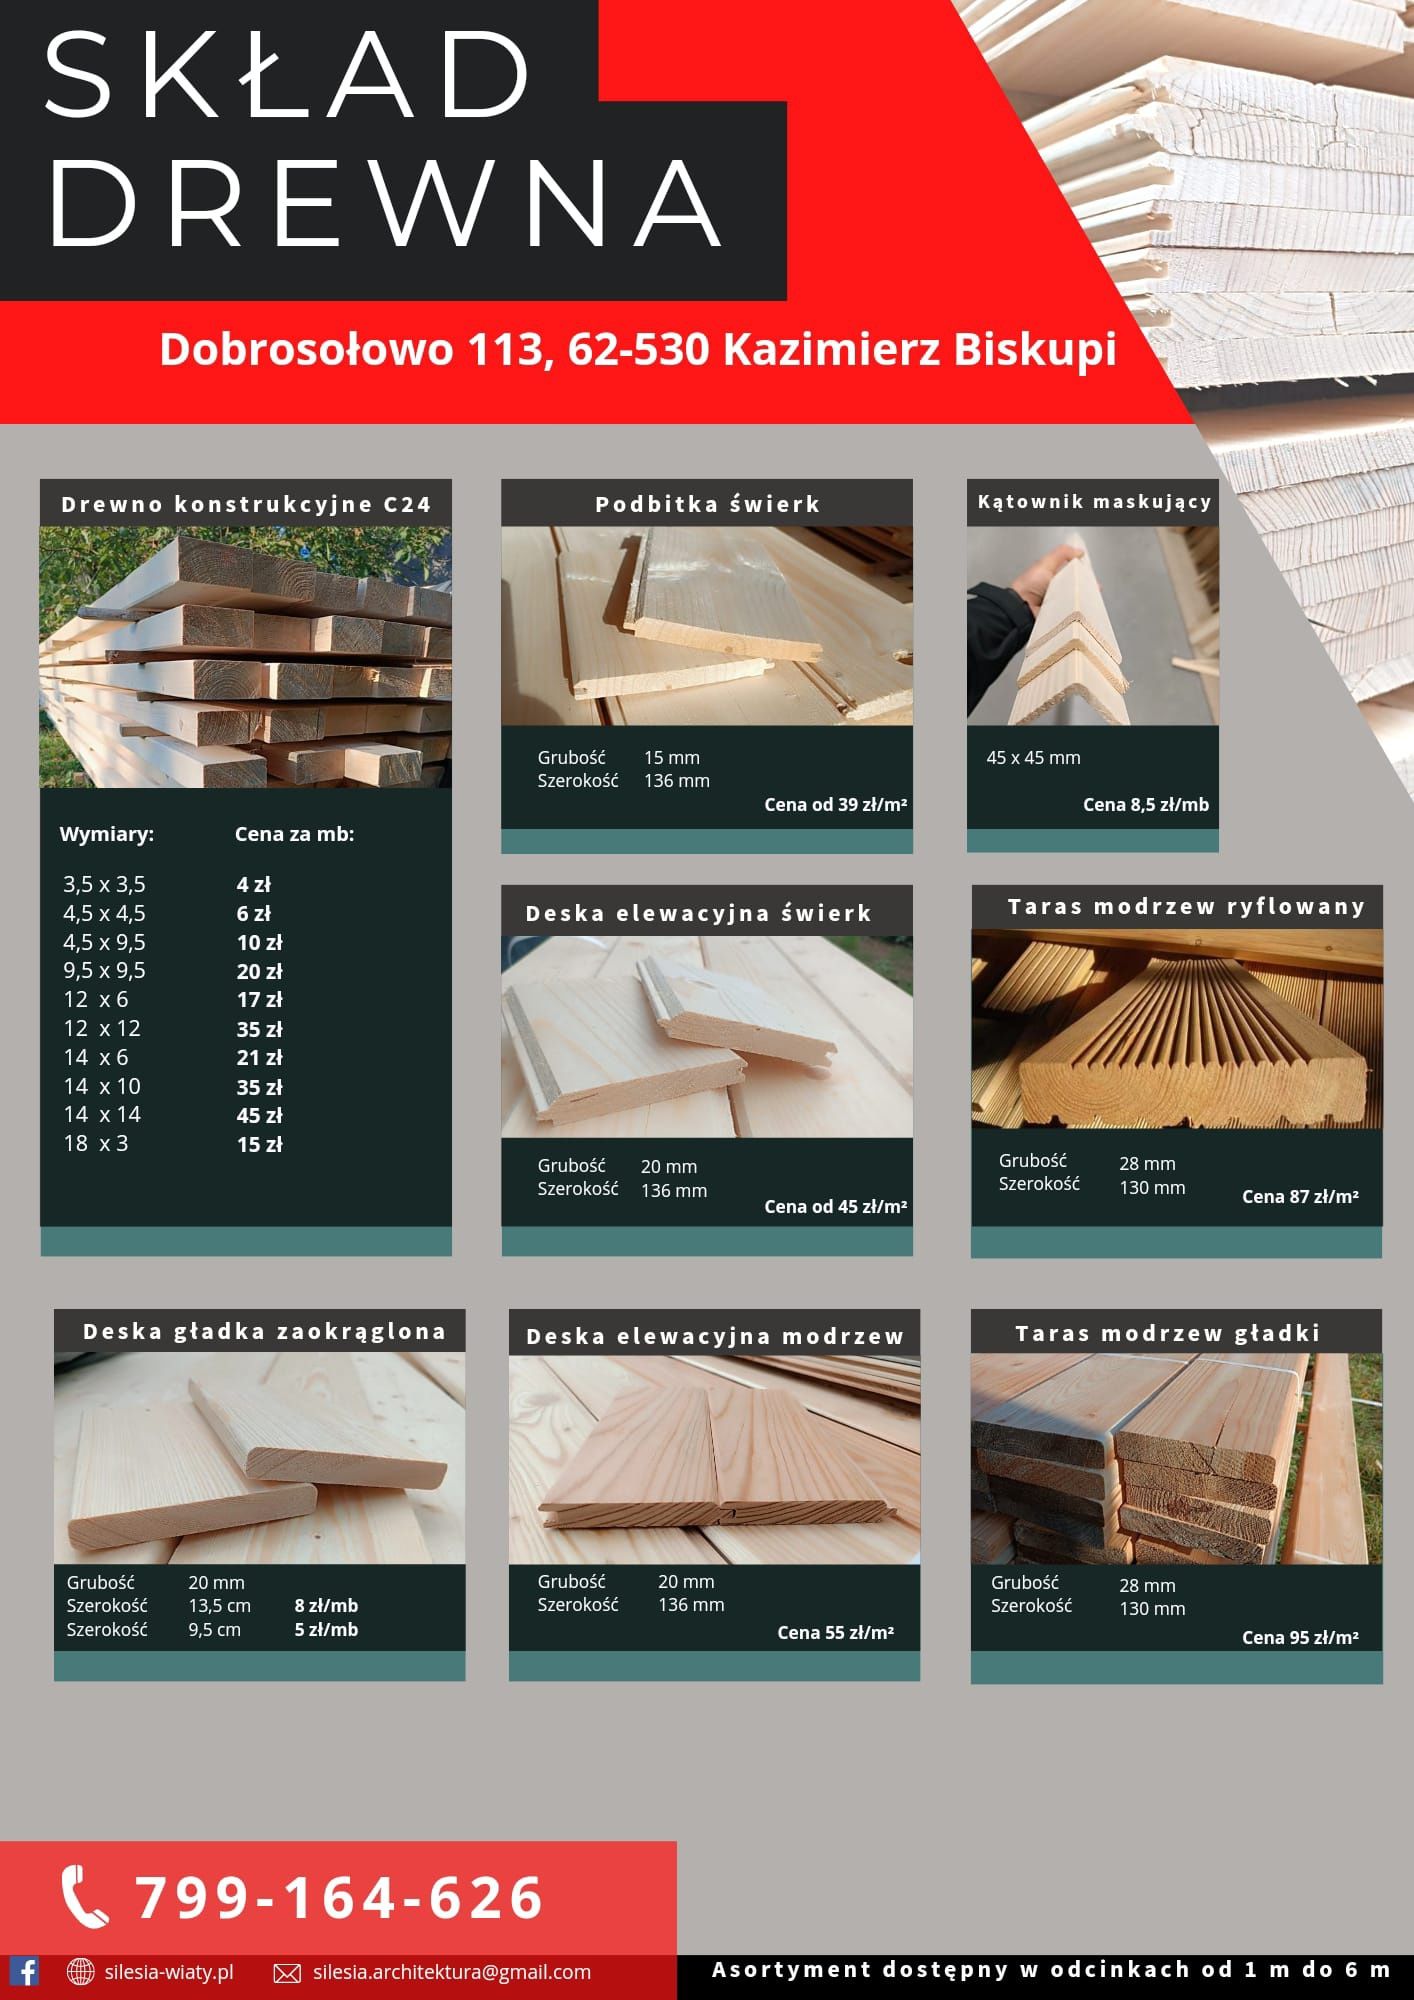 Kantówka 95x95, 10x10 drewno konstrukcyjne c24